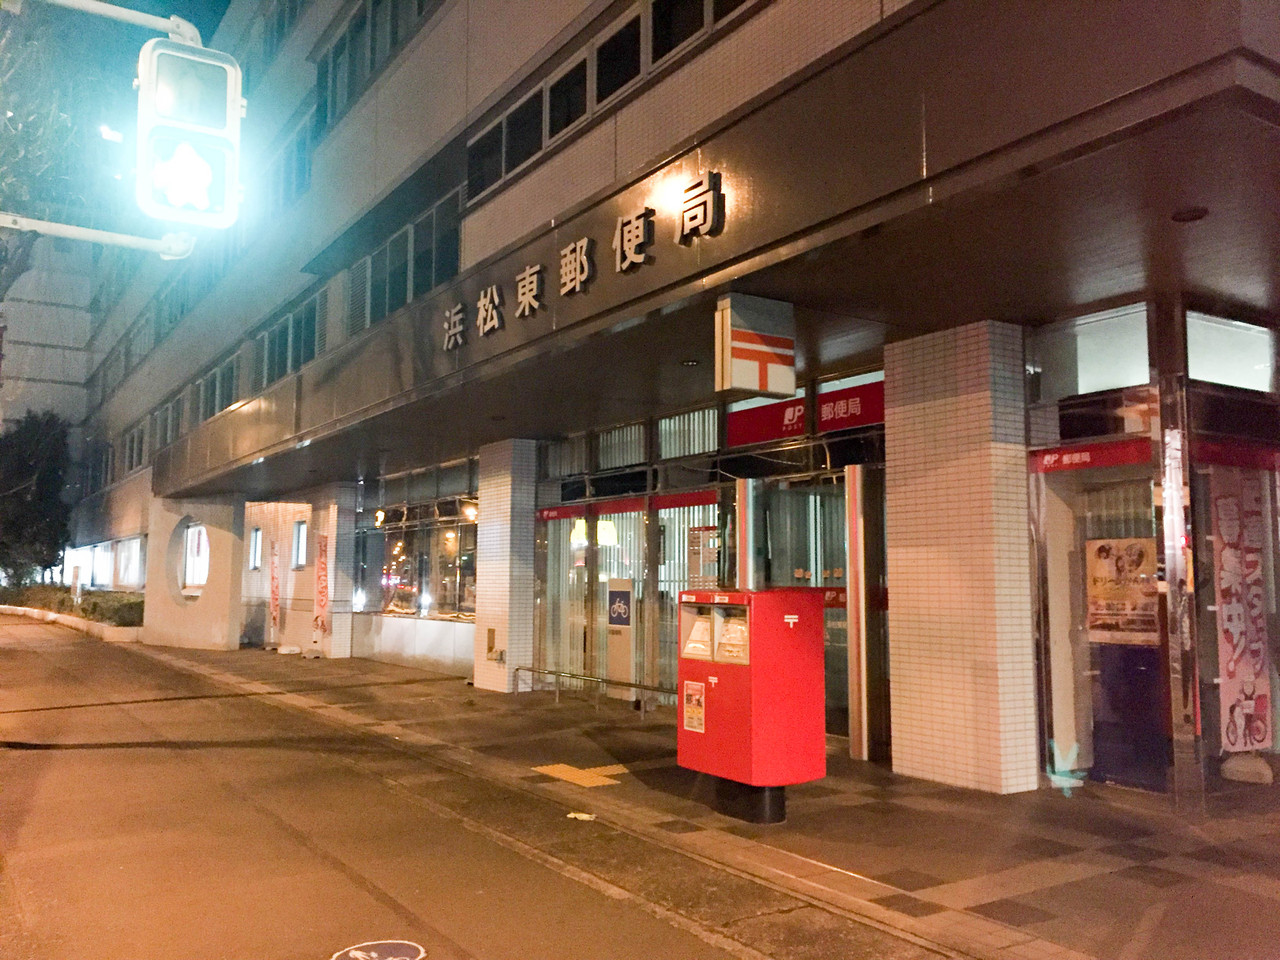 当日消印をゲットしたい そんな時の夜遅くまで営業してる浜松の郵便局 ゆうゆう窓口 をまとめておくよー 浜松つーしん